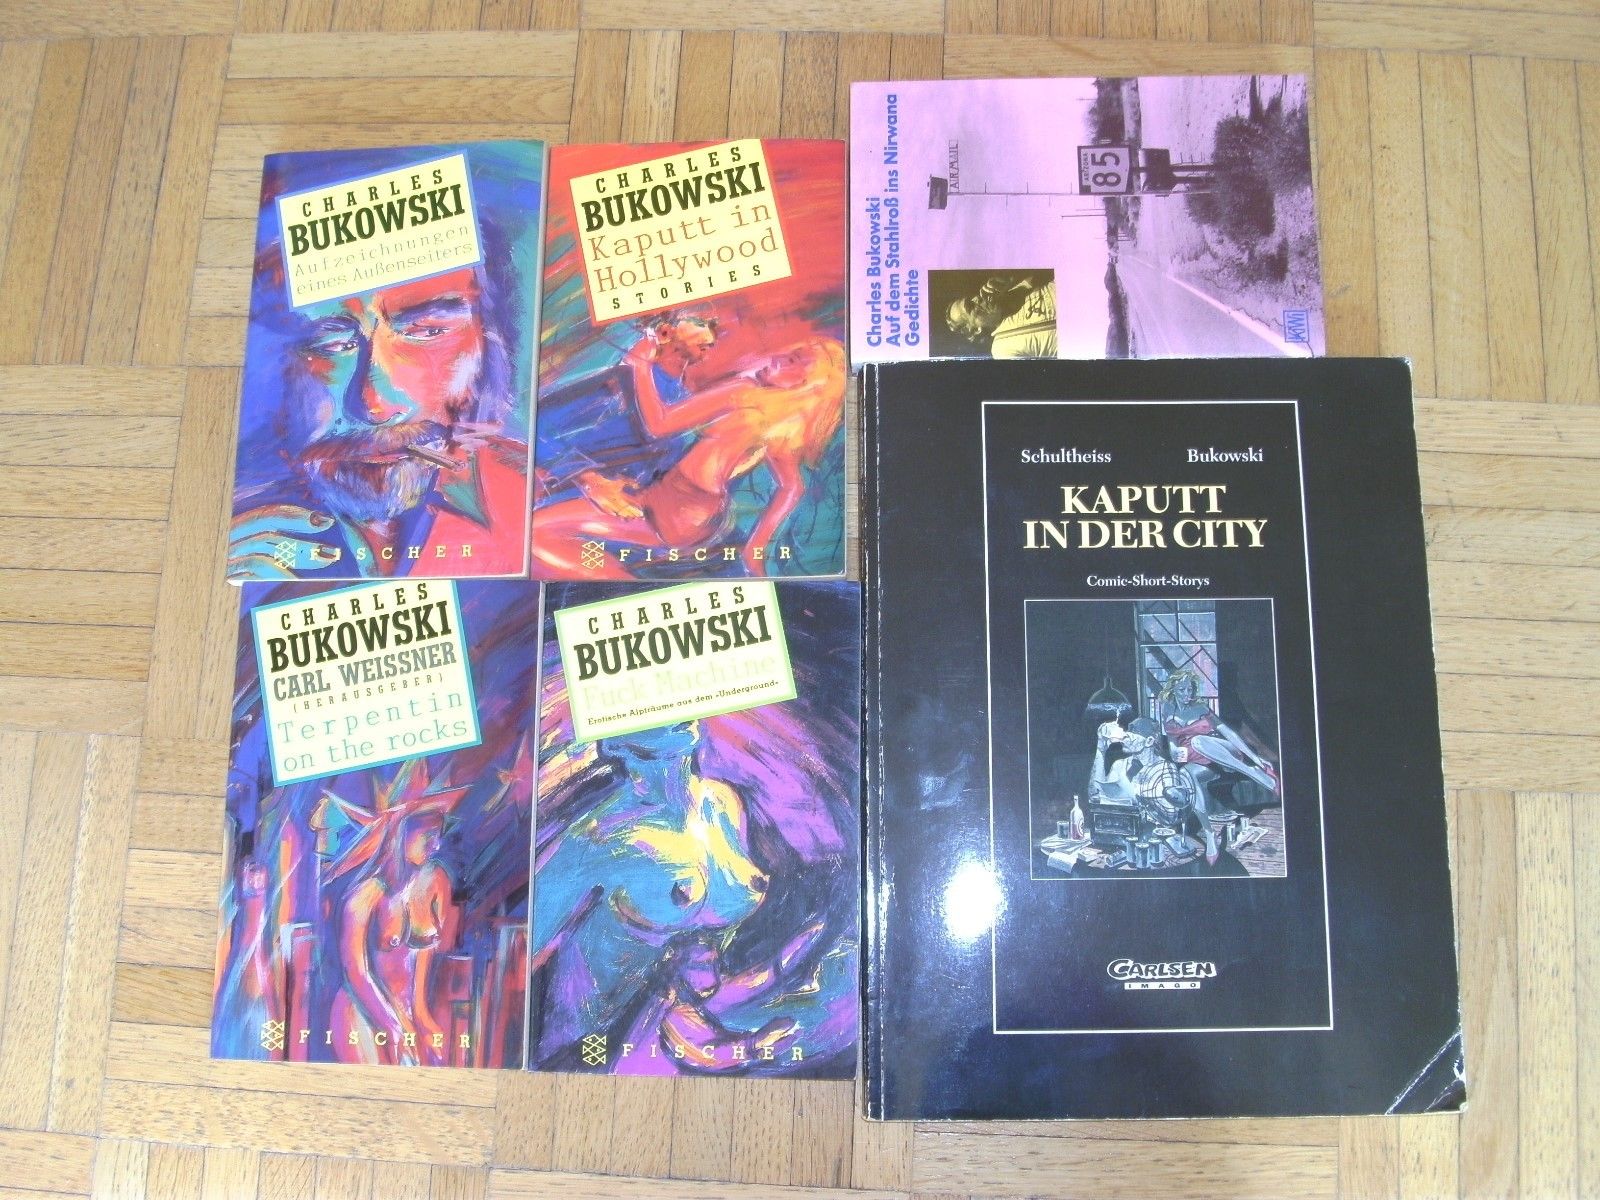 Charles Bukowski Sammlung, Romane u. Gedichte, Comic-Short-Stories, 15 Bücher